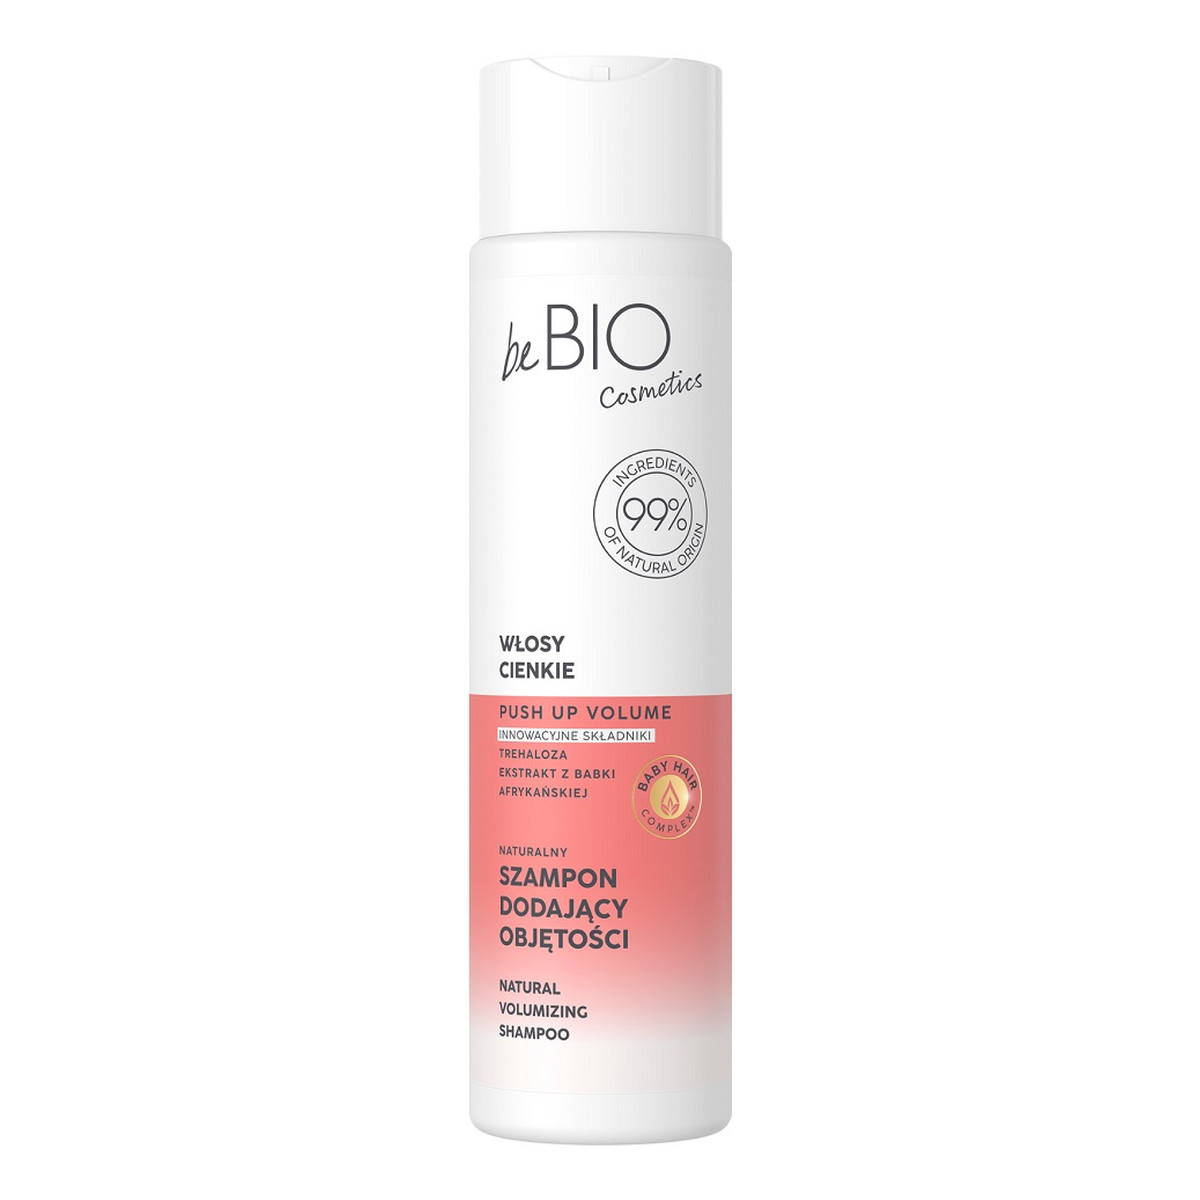 Be Bio Ewa Chodakowska Baby hair complex naturalny szampon dodający objętości do włosów cienkich 300ml